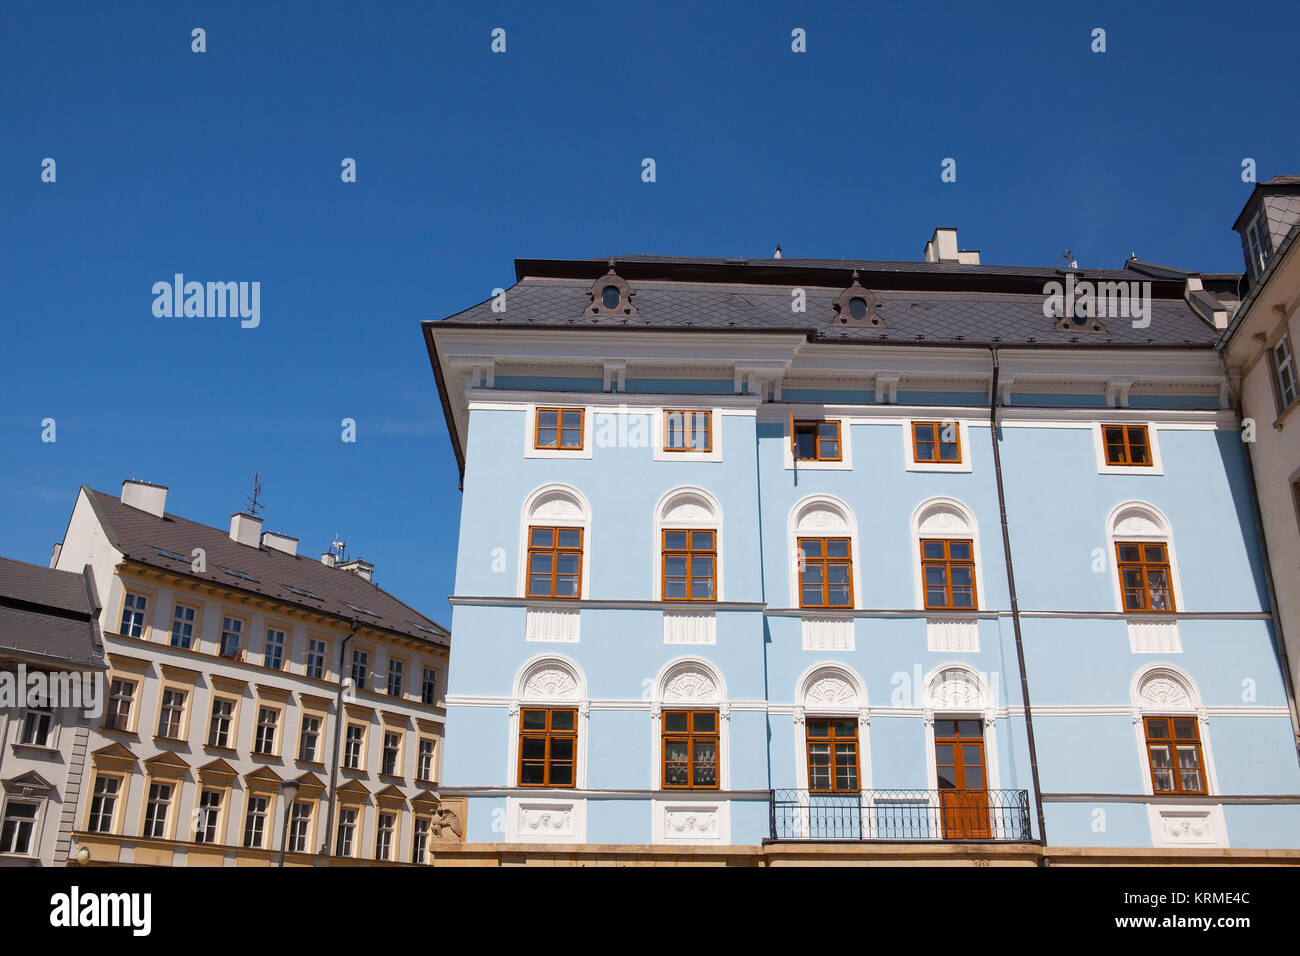 Renoviertes Gebäude auf dem Dolni Square von Olomouc, Tschechische Republik, ursprünglicher Name Dolni namesti. Berühmten Unesco Weltkulturerbe Stadt und touristische Attraktion. Stockfoto